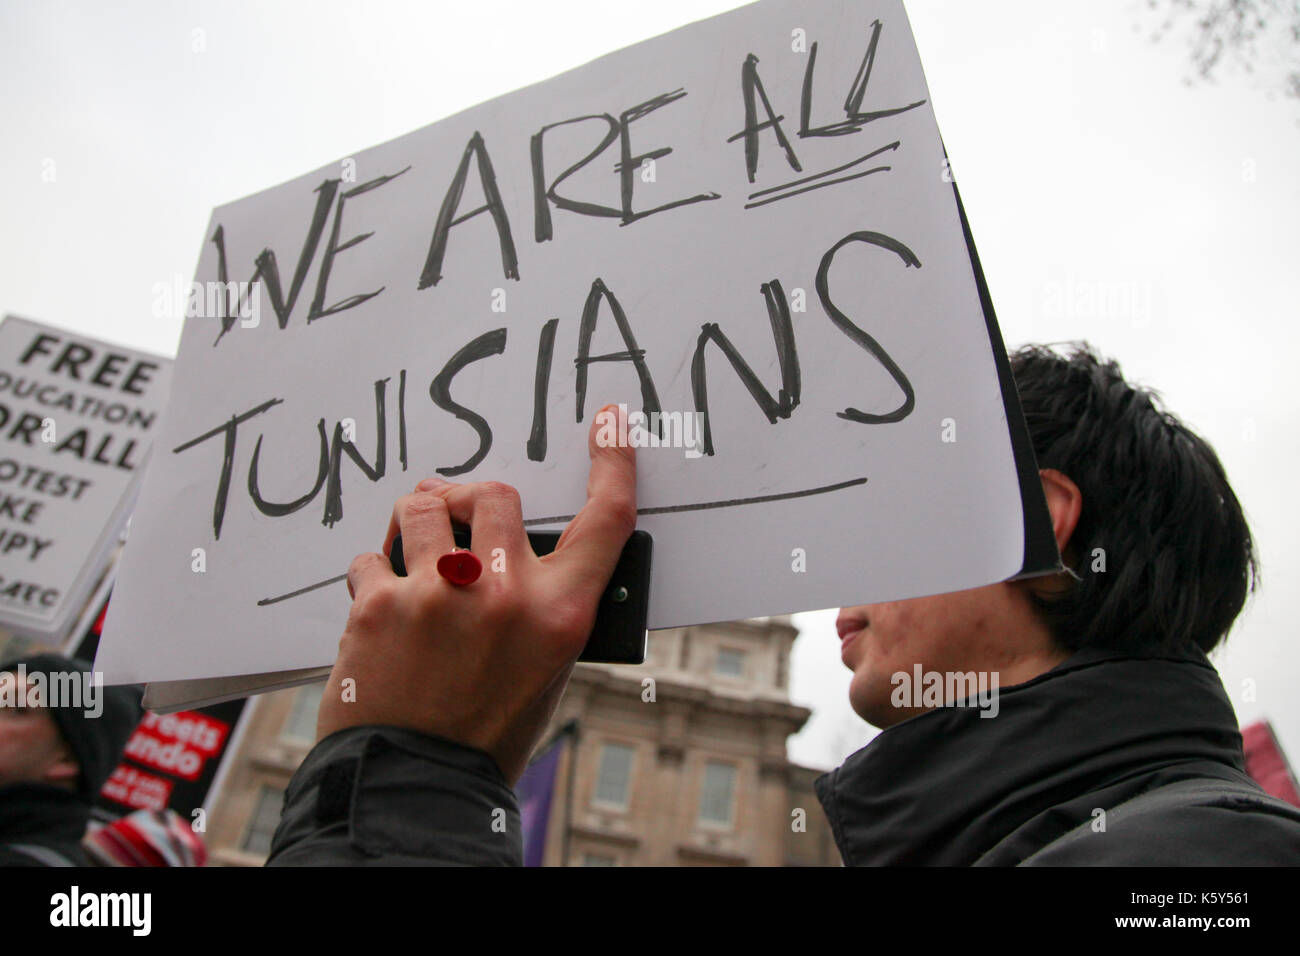 Un pro-Tuinsia protester detiene una targhetta "Siamo tutti tunisini' durante lo studente tasse protesta nel centro di Londra, Regno Unito. Foto Stock